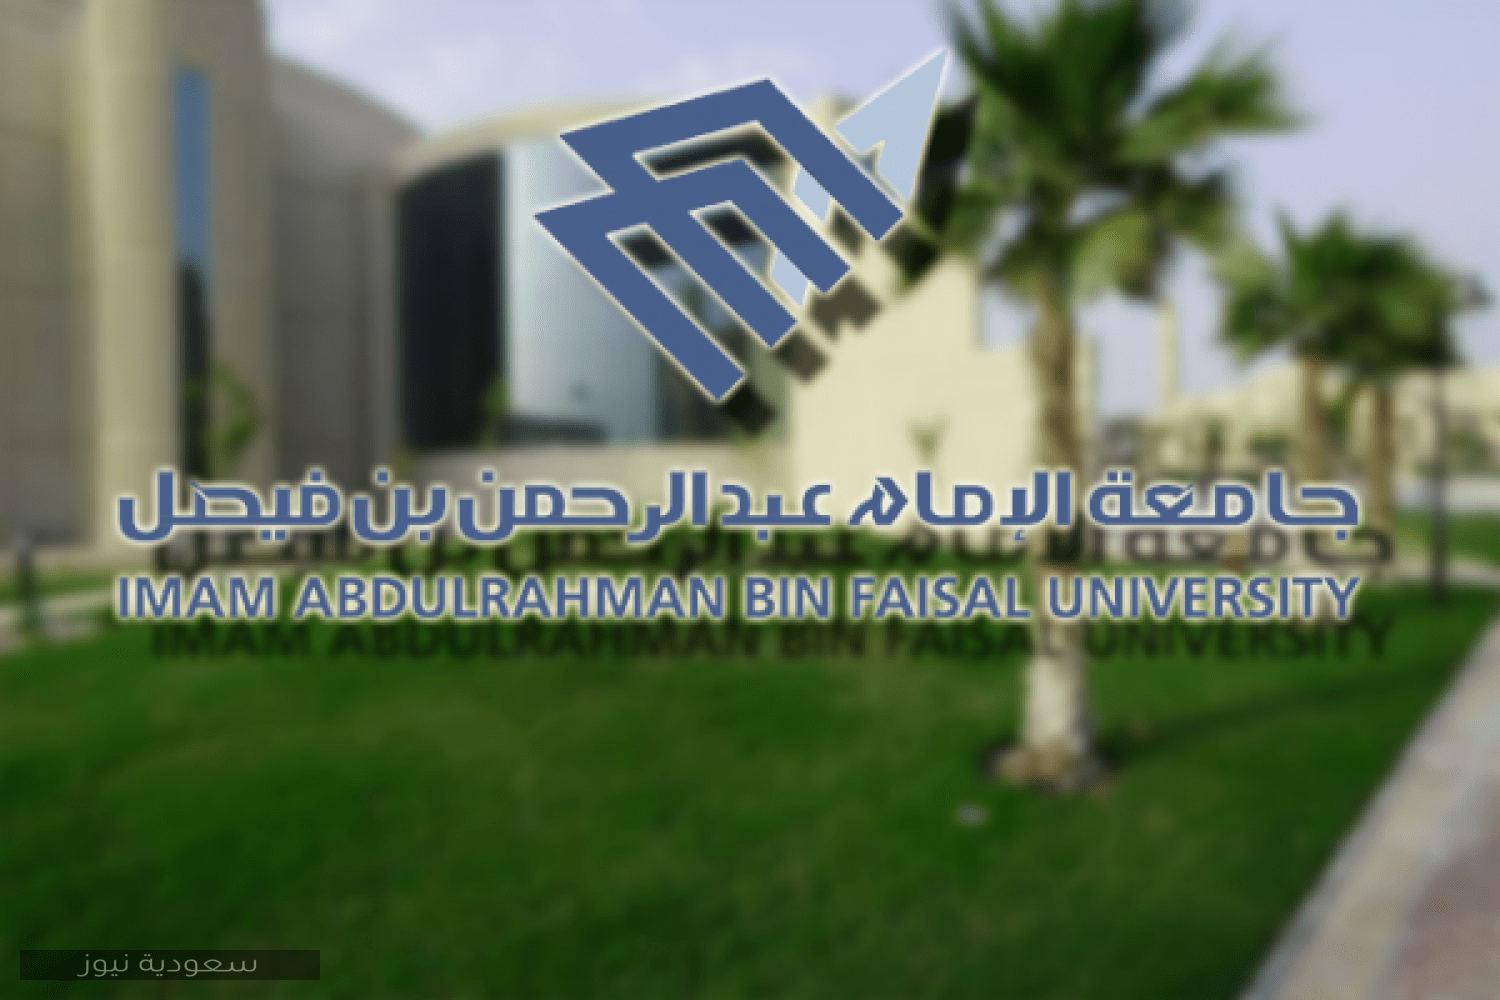 موعد التسجيل بجامعة الإمام عبد الرحمن بن فيصل وطريقة التقديم